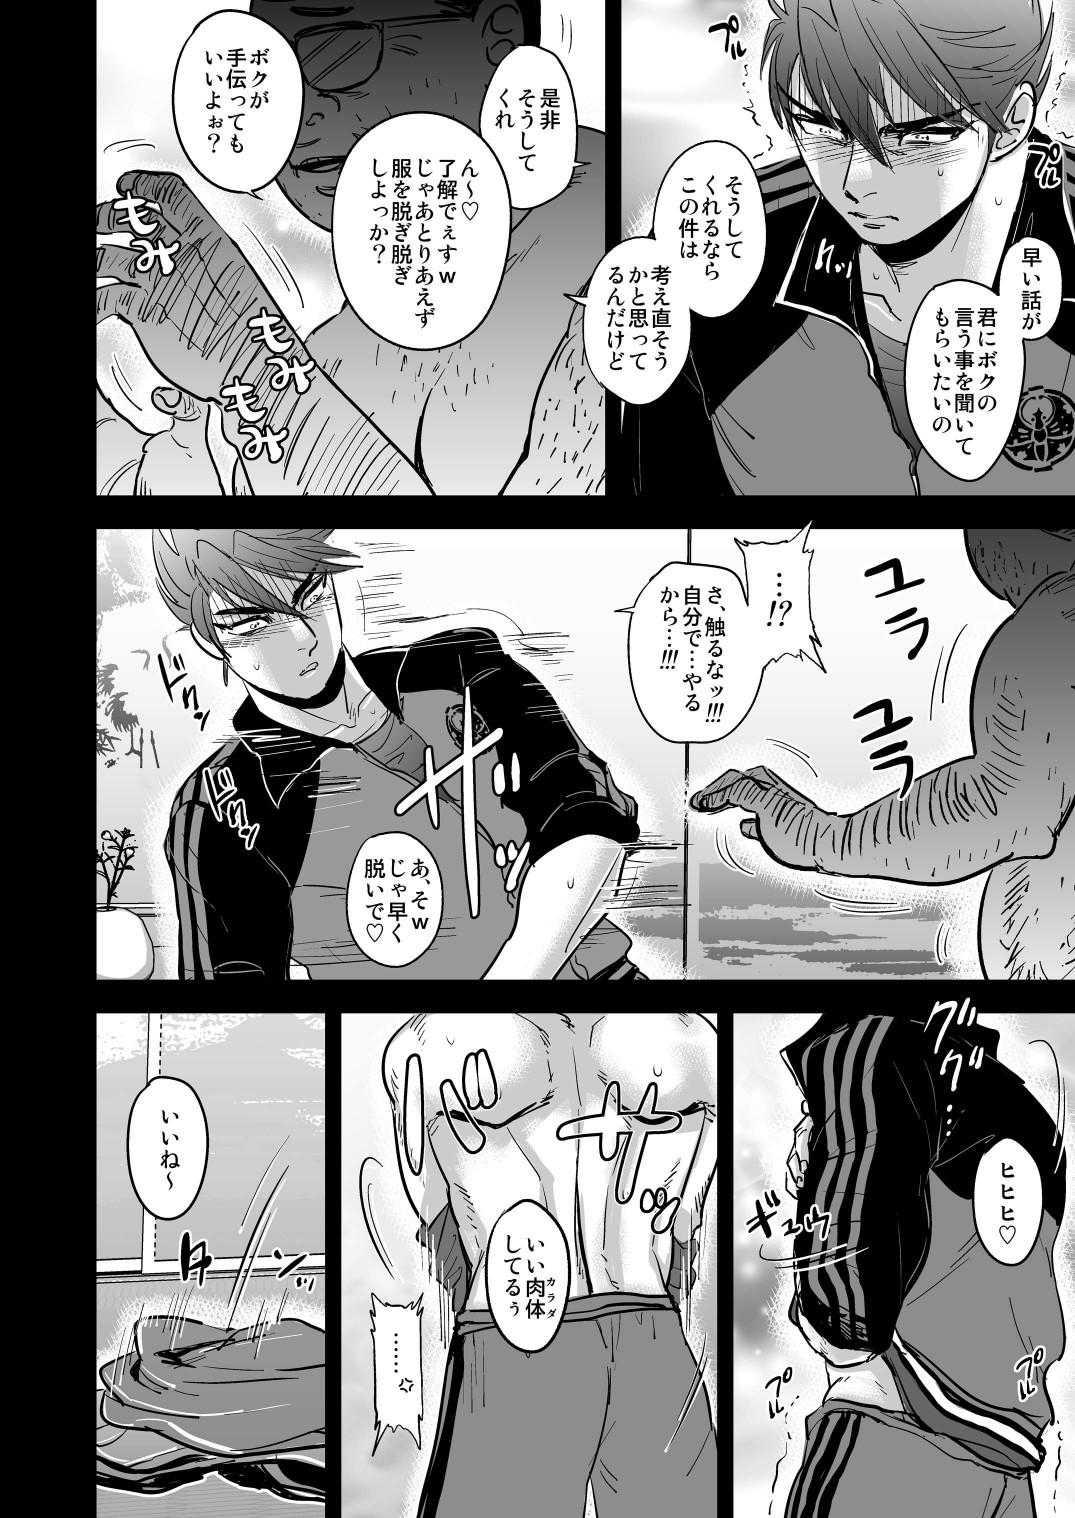 Gayfuck Kono Ookanehira o Kyouhaku shite Doujinshi o Tsukurimashita - Touken ranbu Ginger - Page 8